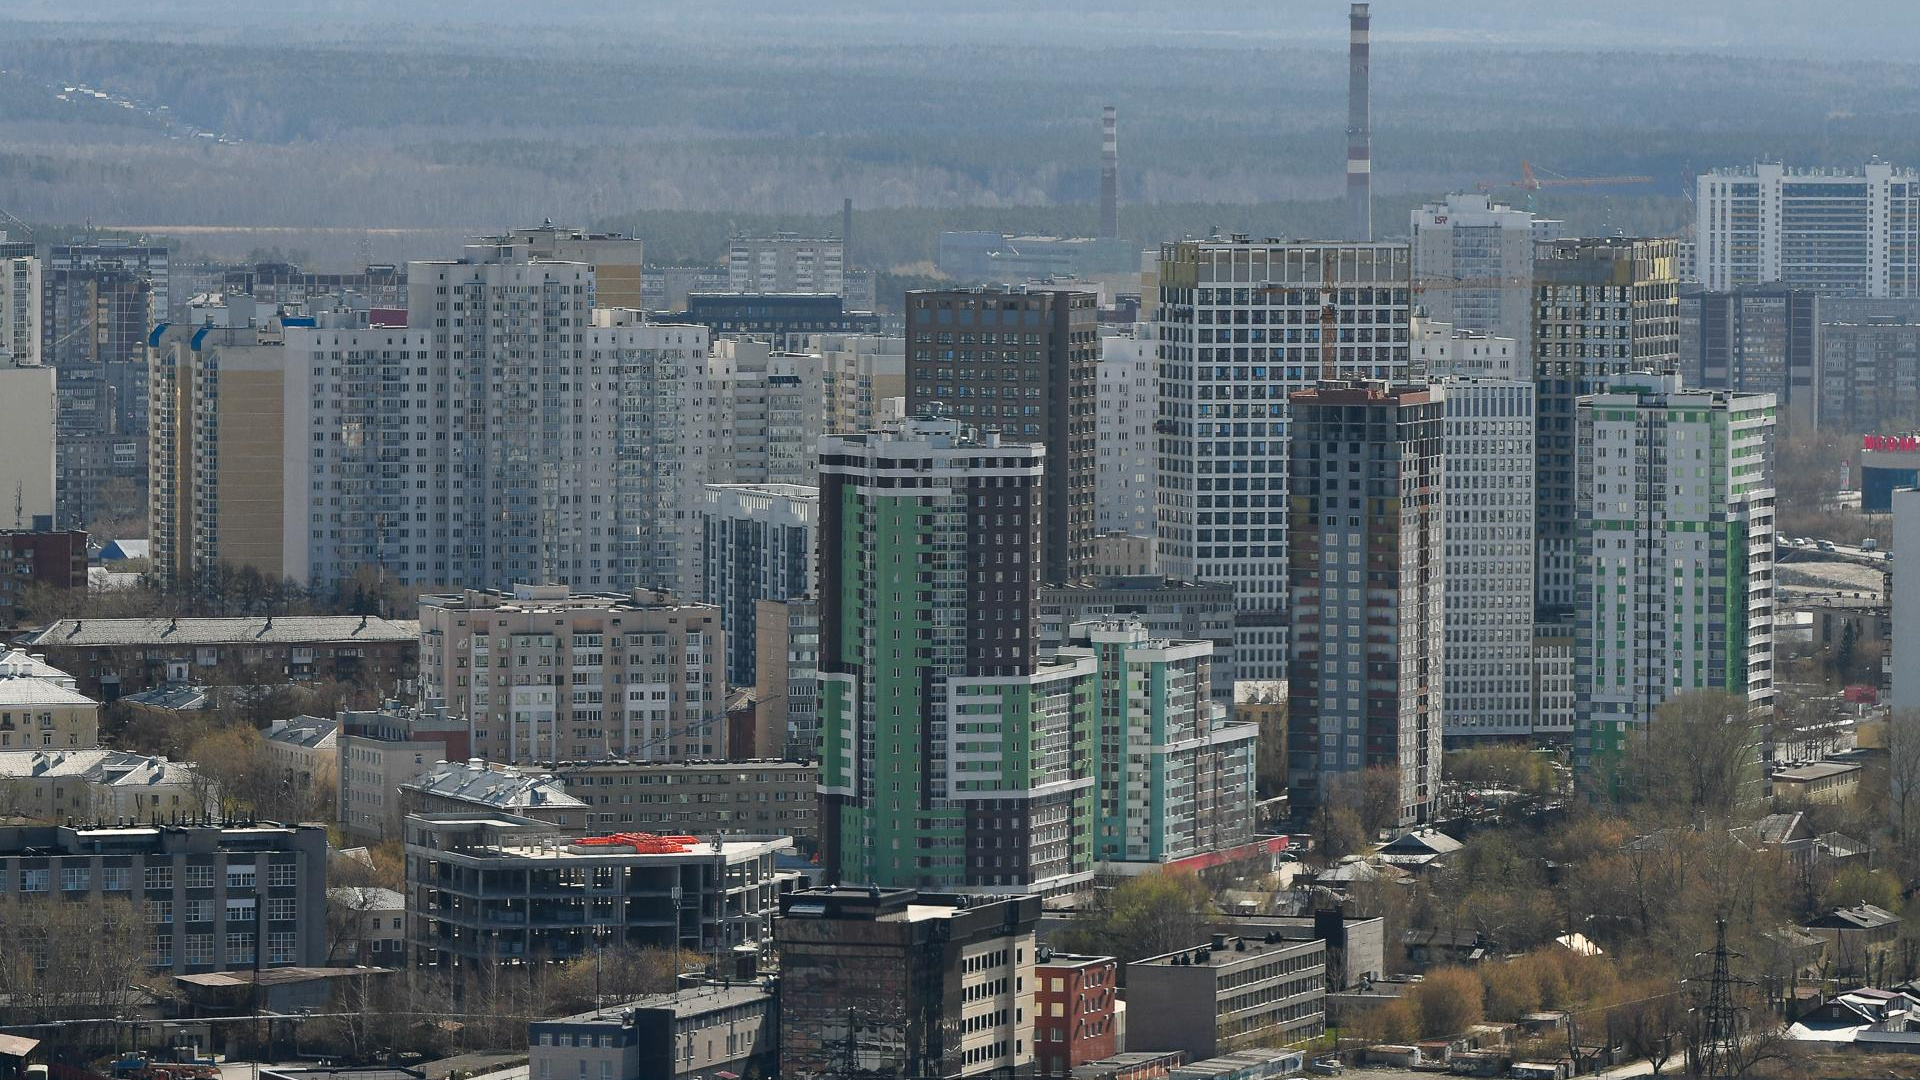 Через 11 лет в России у каждой семьи будет две квартиры и дача. Что об этом думают екатеринбуржцы?